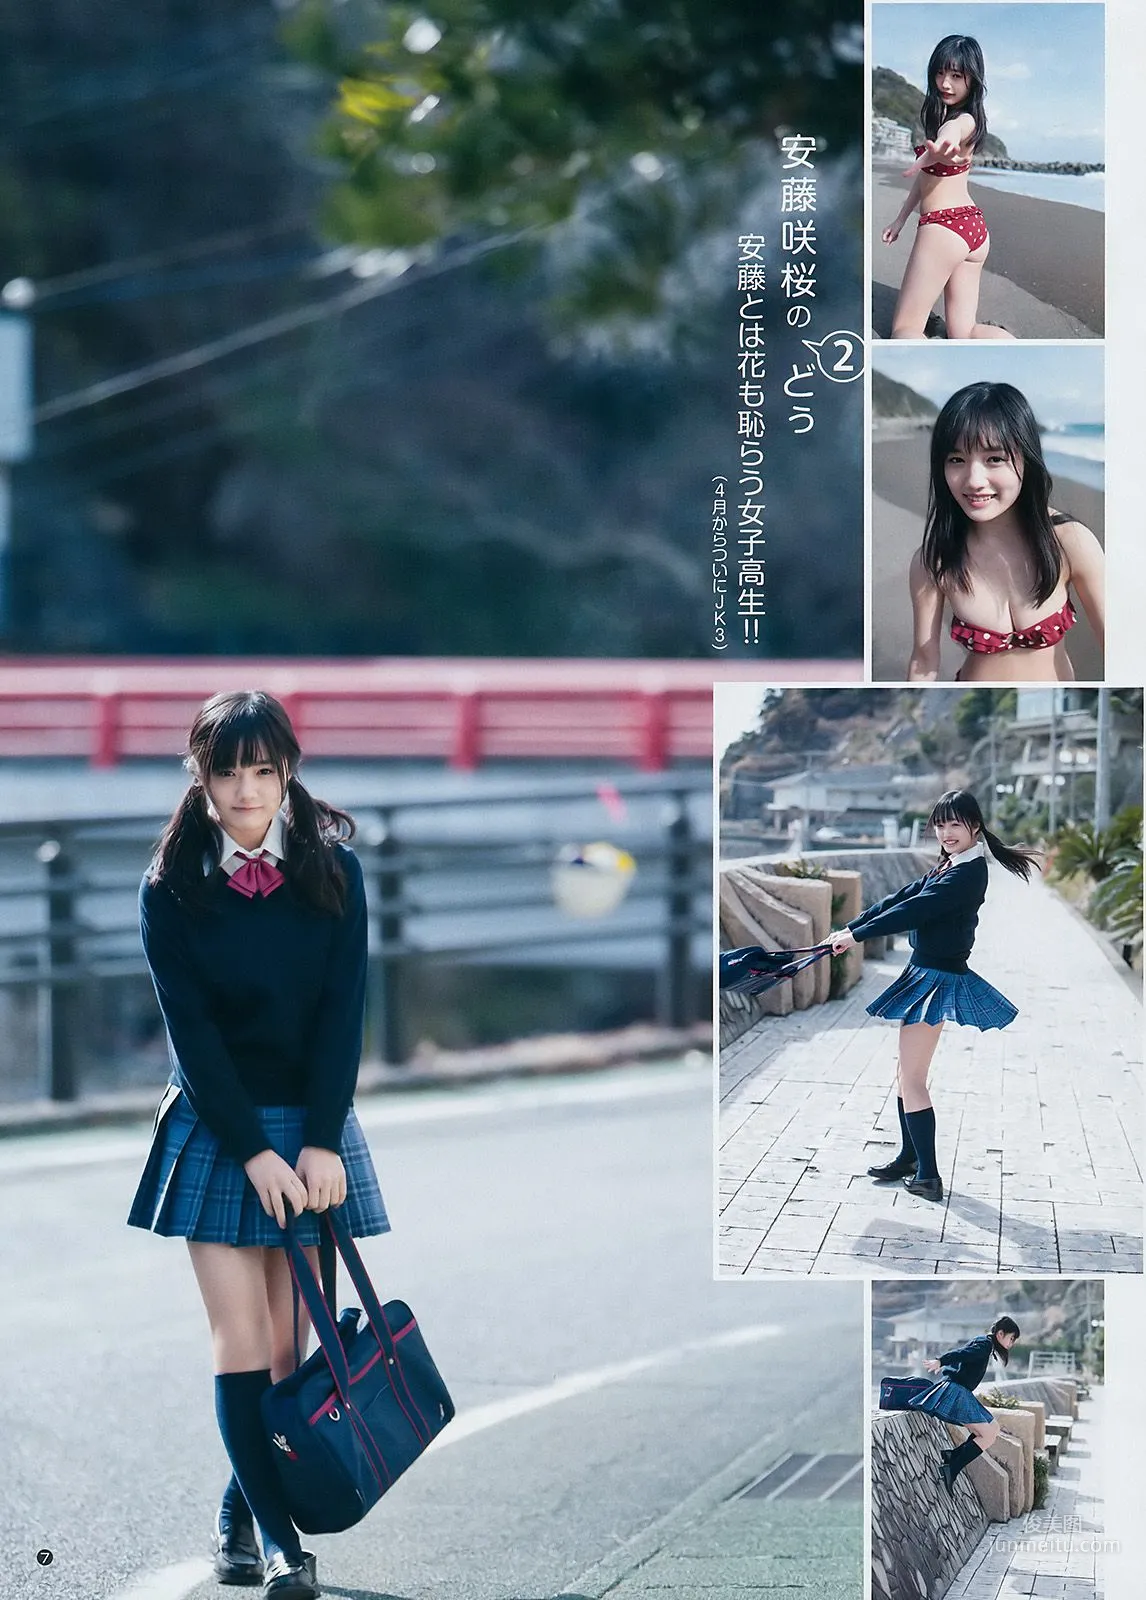 えなこ 馬嘉伶 若月佑美 安藤咲桜 [Weekly Young Jump] 2018年No.14 写真杂志19